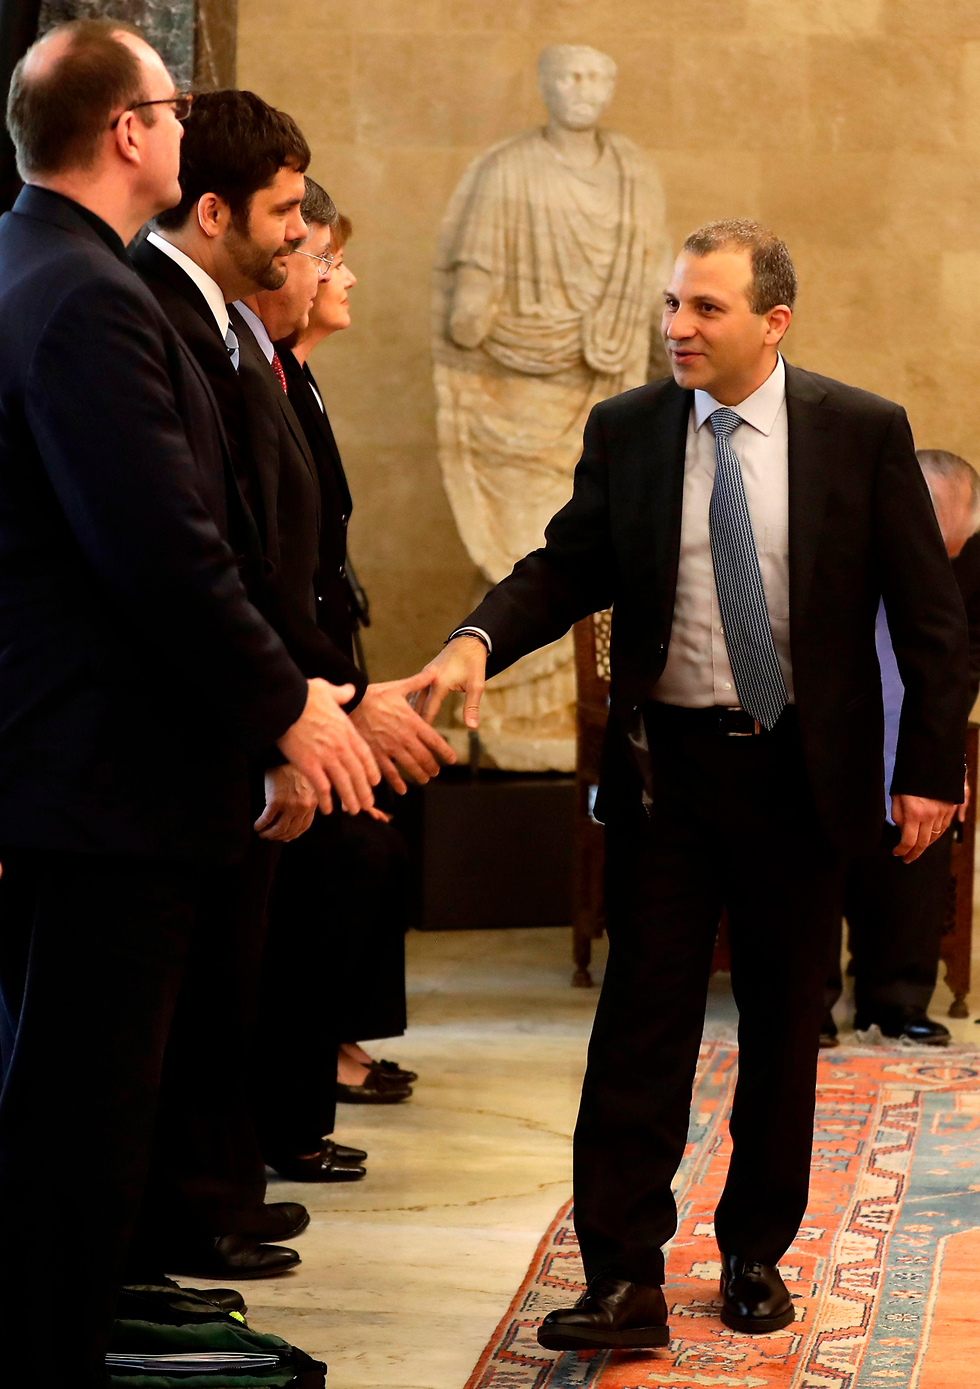 שר החוץ הלבנוני באסיל לוחץ יד למשלחת האמריקנית (צילום: AFP) (צילום: AFP)